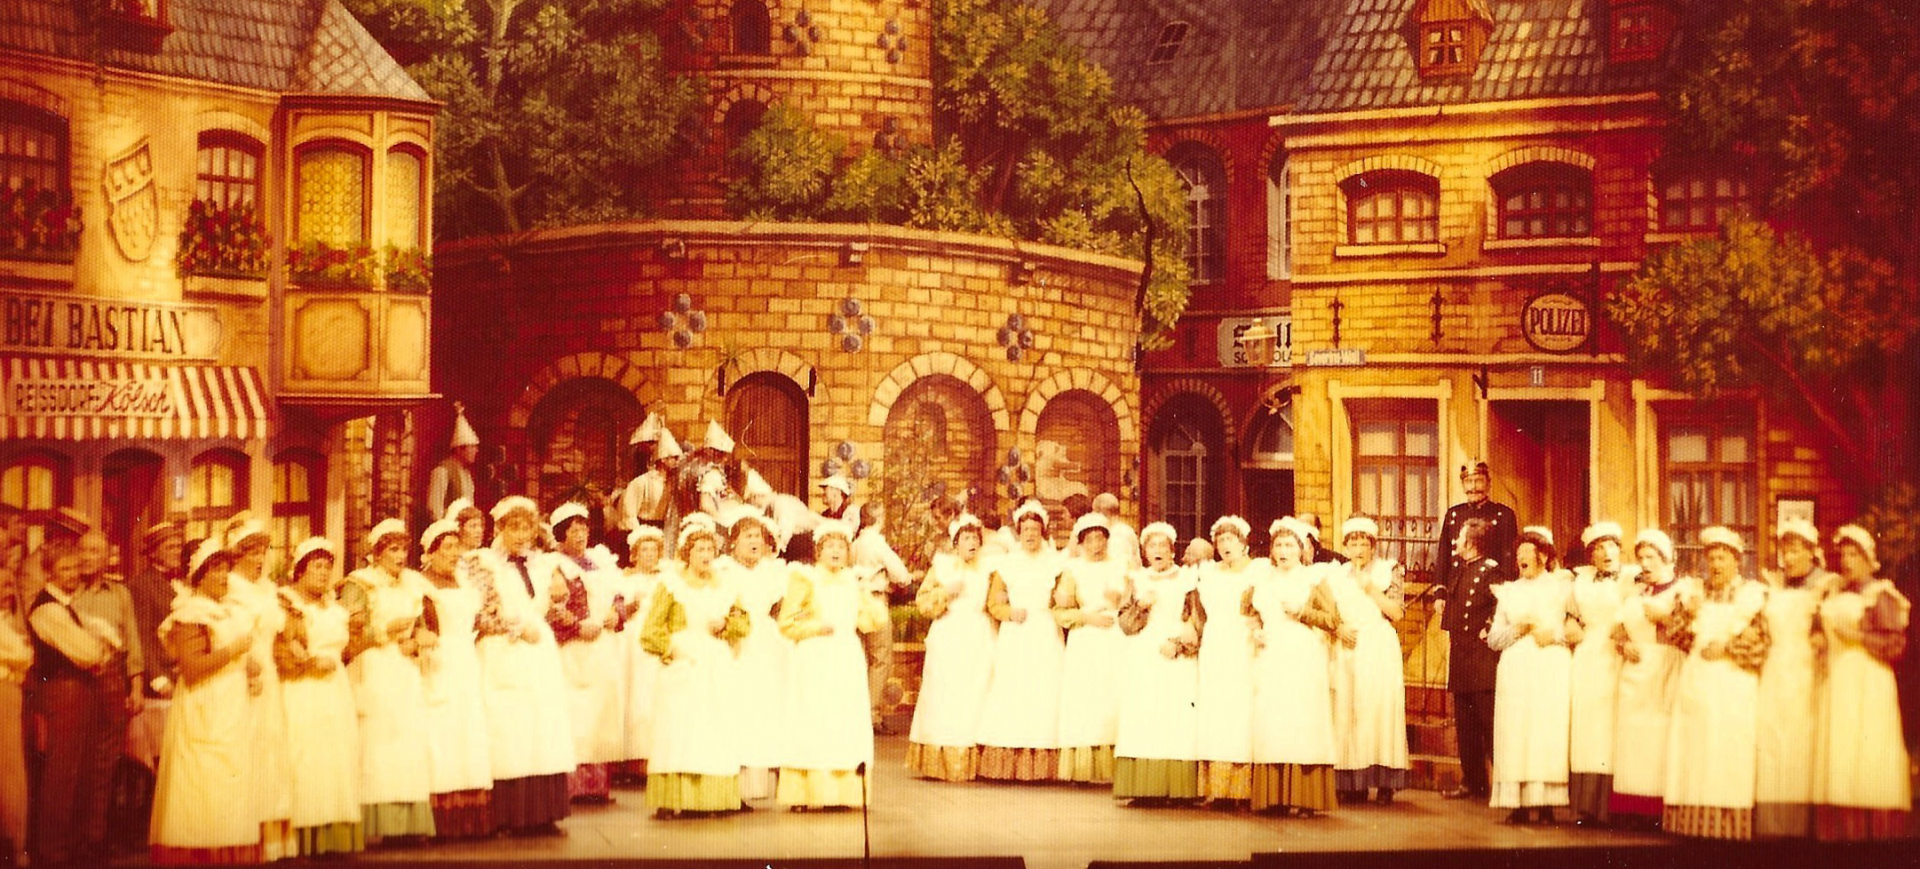 Et Carmen vun dr Bottmüll - Divertissementchen 1979 - Großer Chor in Damenrollen